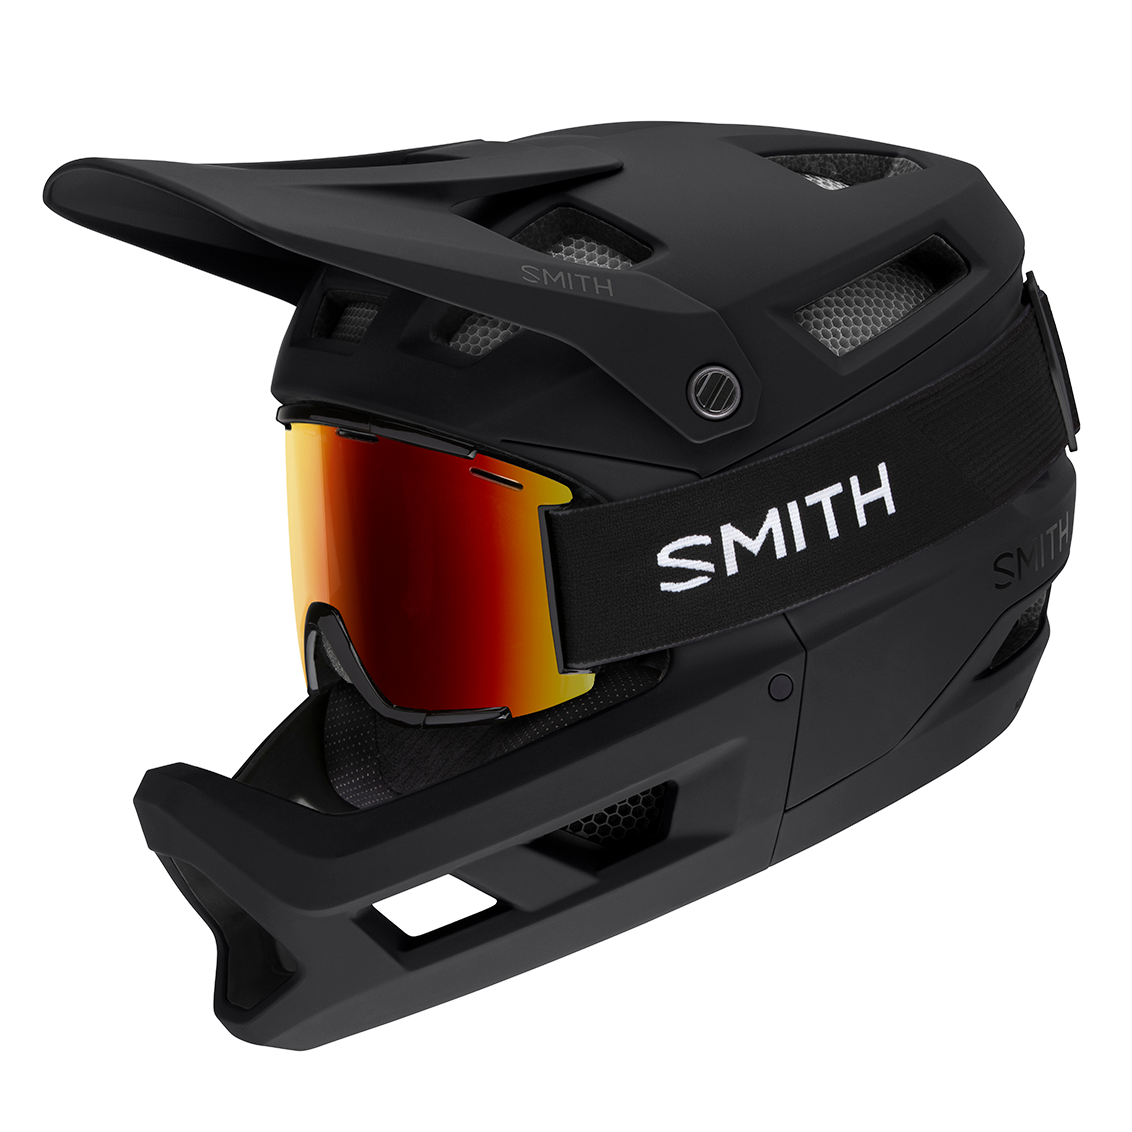 The Smith Mainline Fullface Helmet